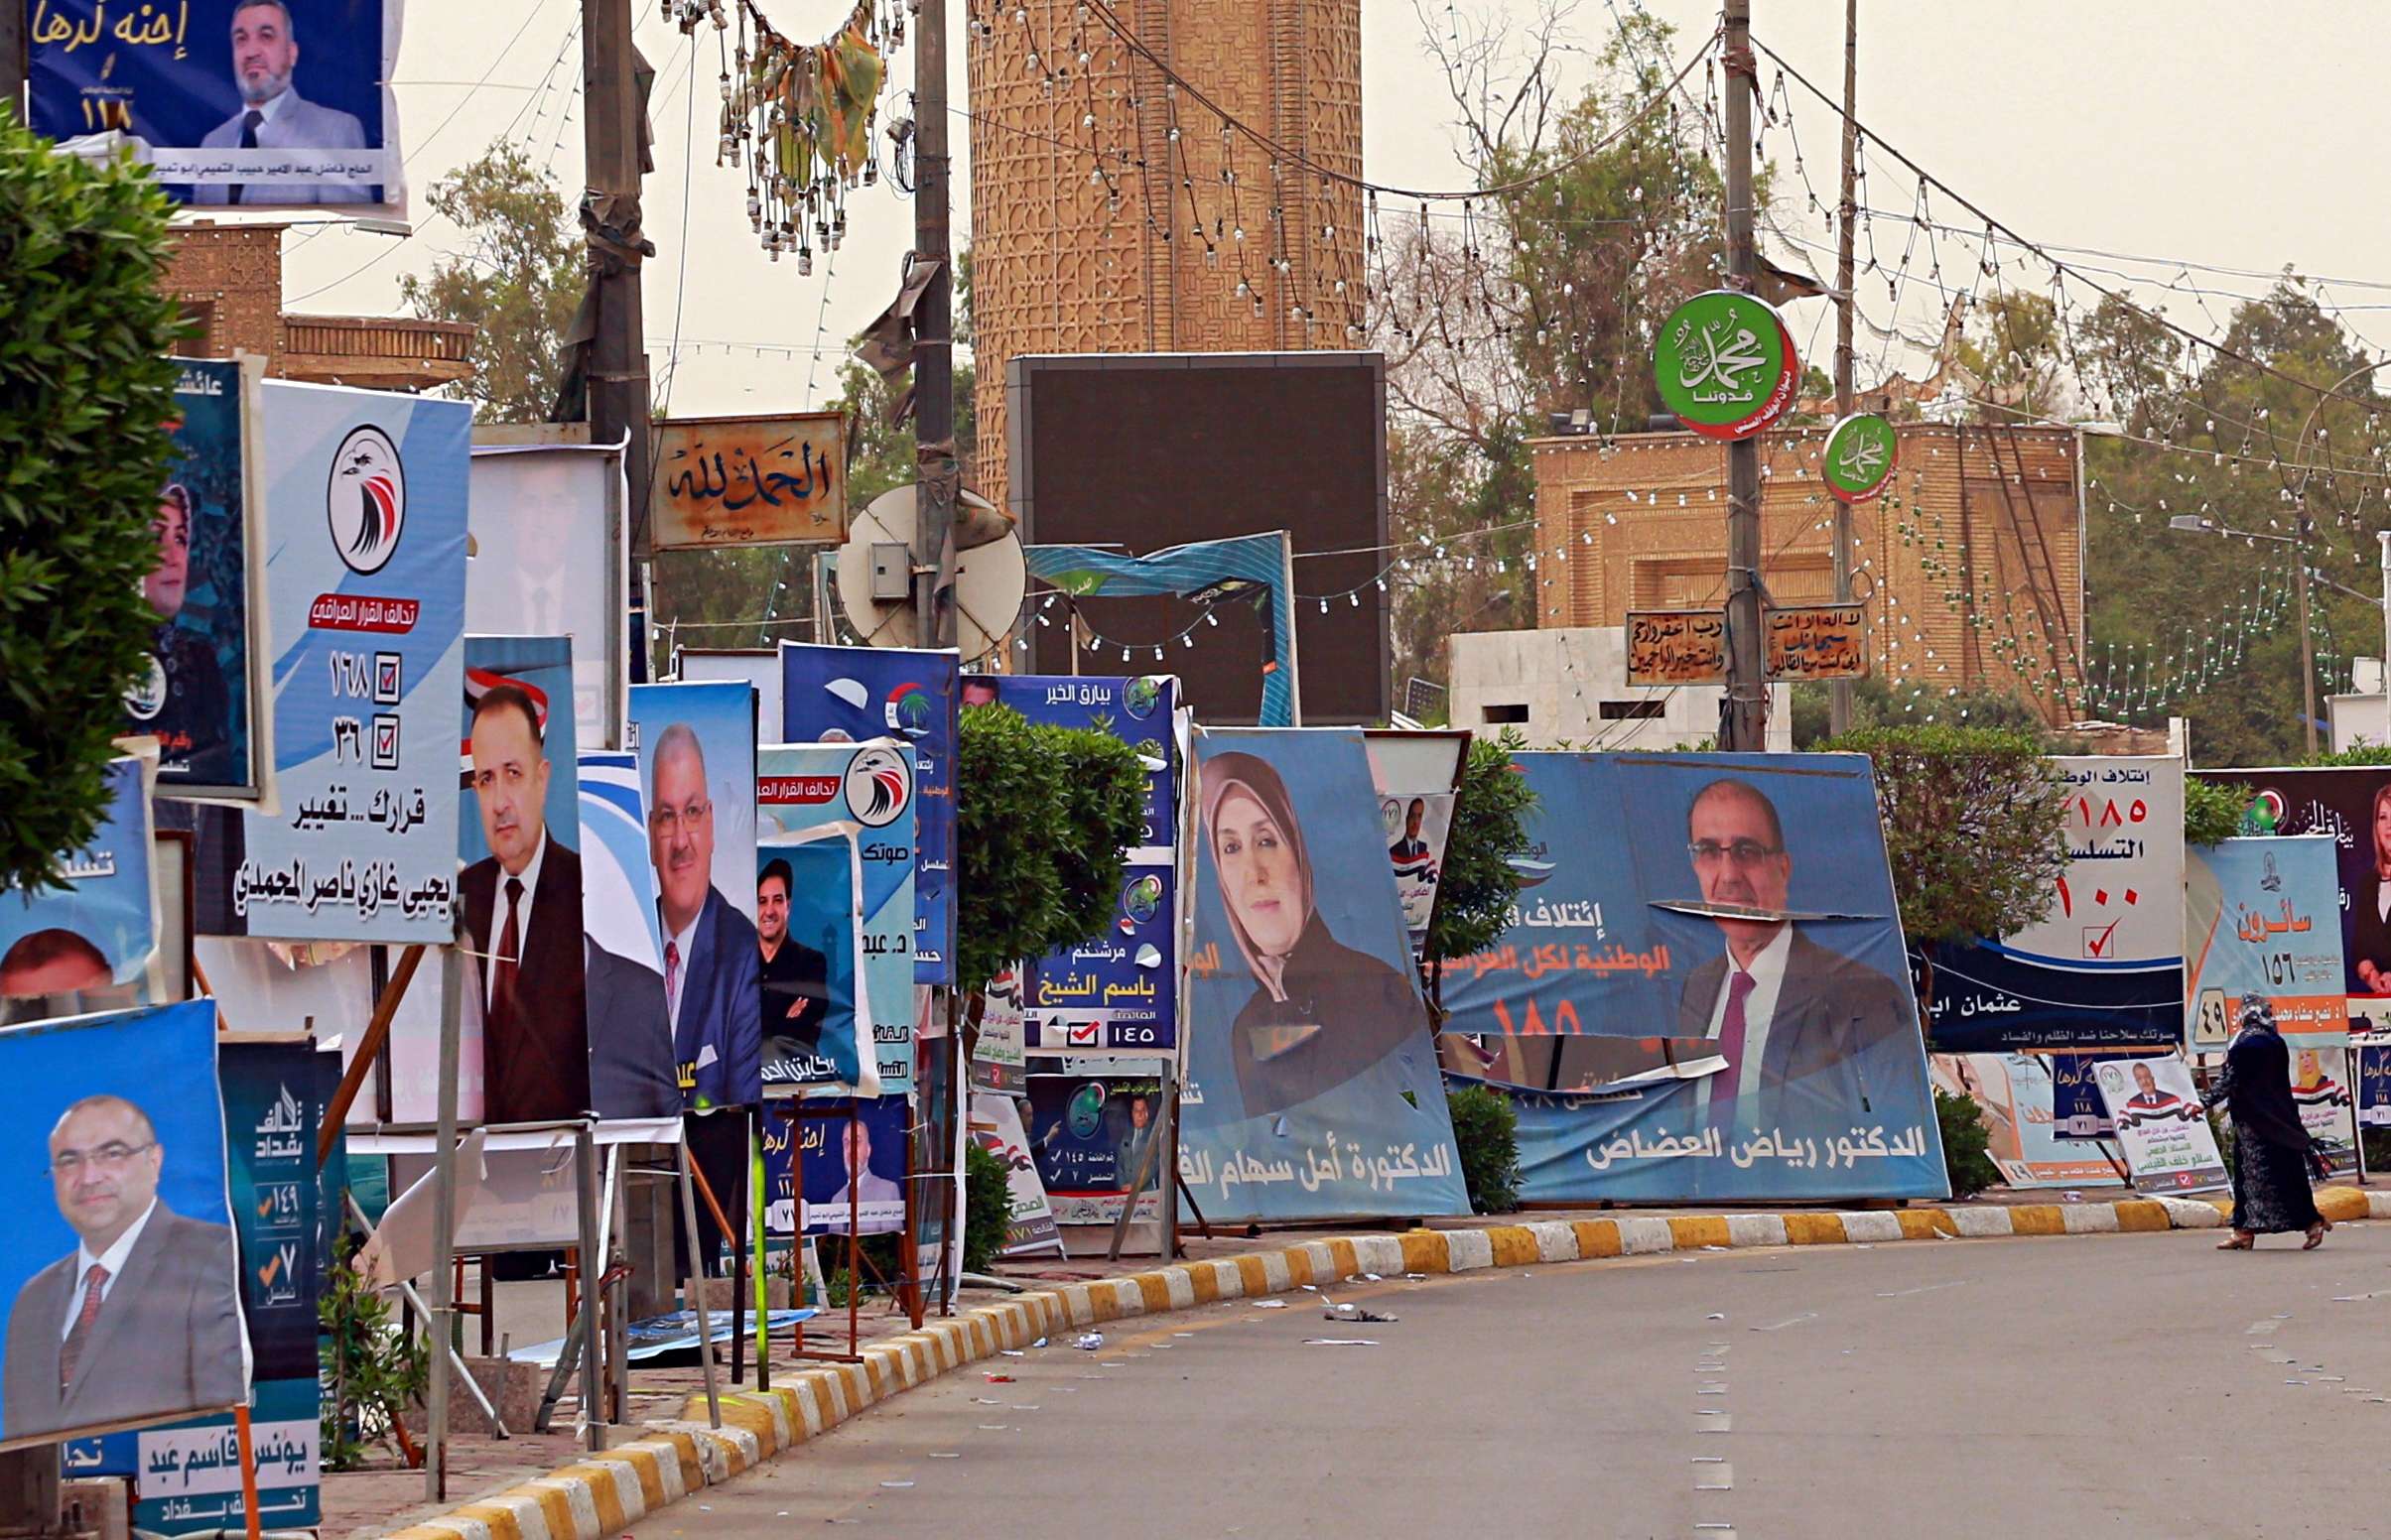  لافتات وملصقات تنتشر في شوارع العراق تستبق الانتخابات